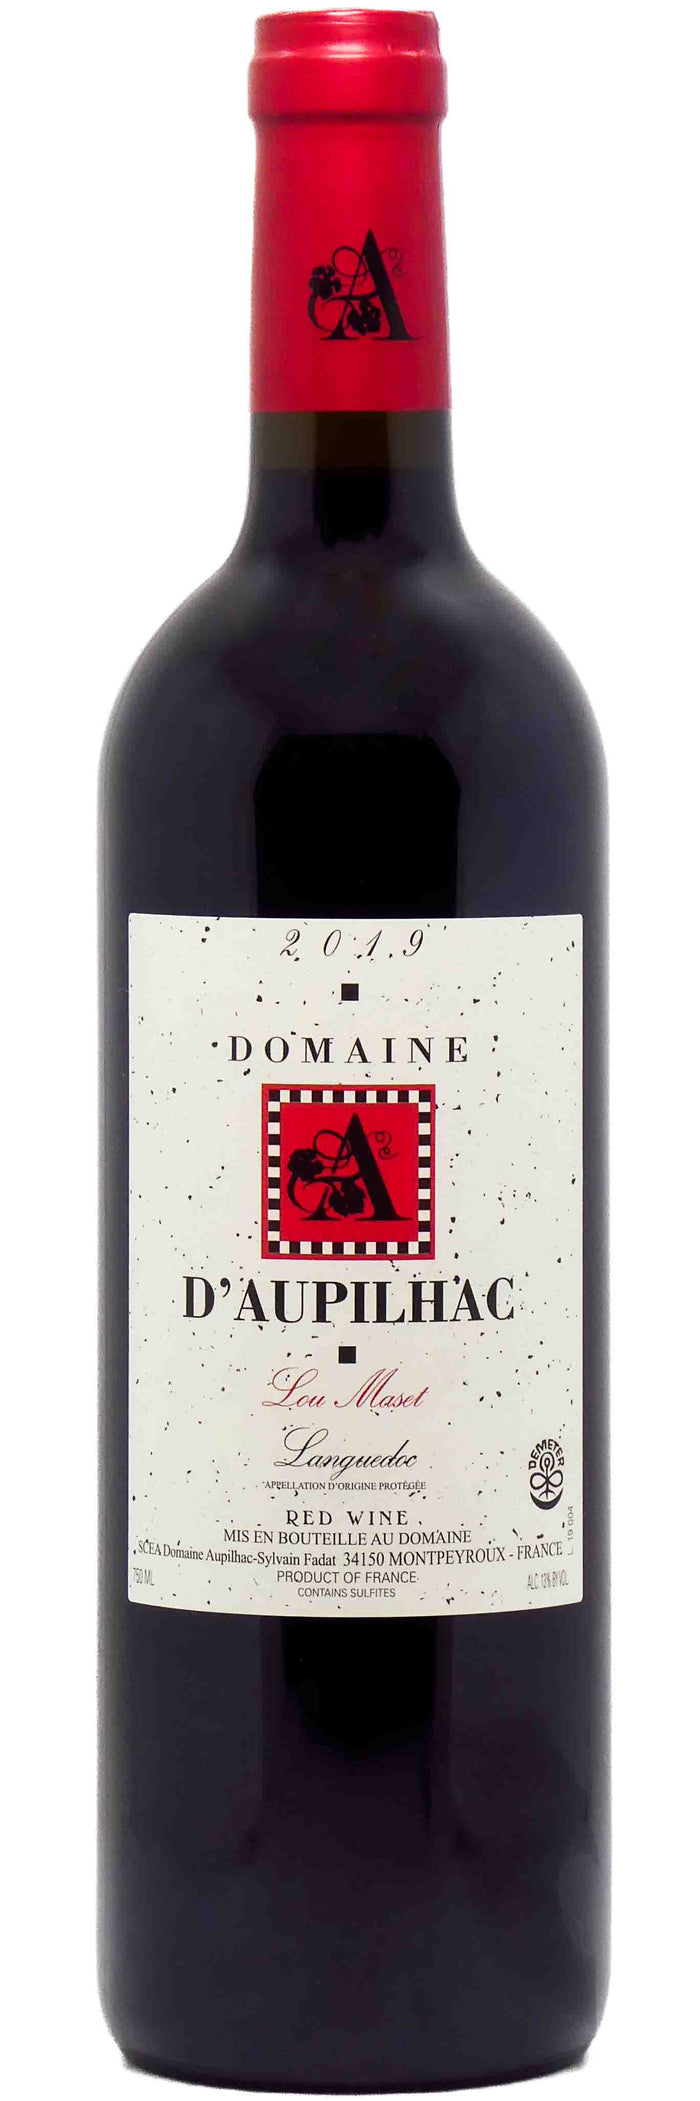 Dom. d'Aupilhac Languedoc Rouge "Lou Maset" 2019